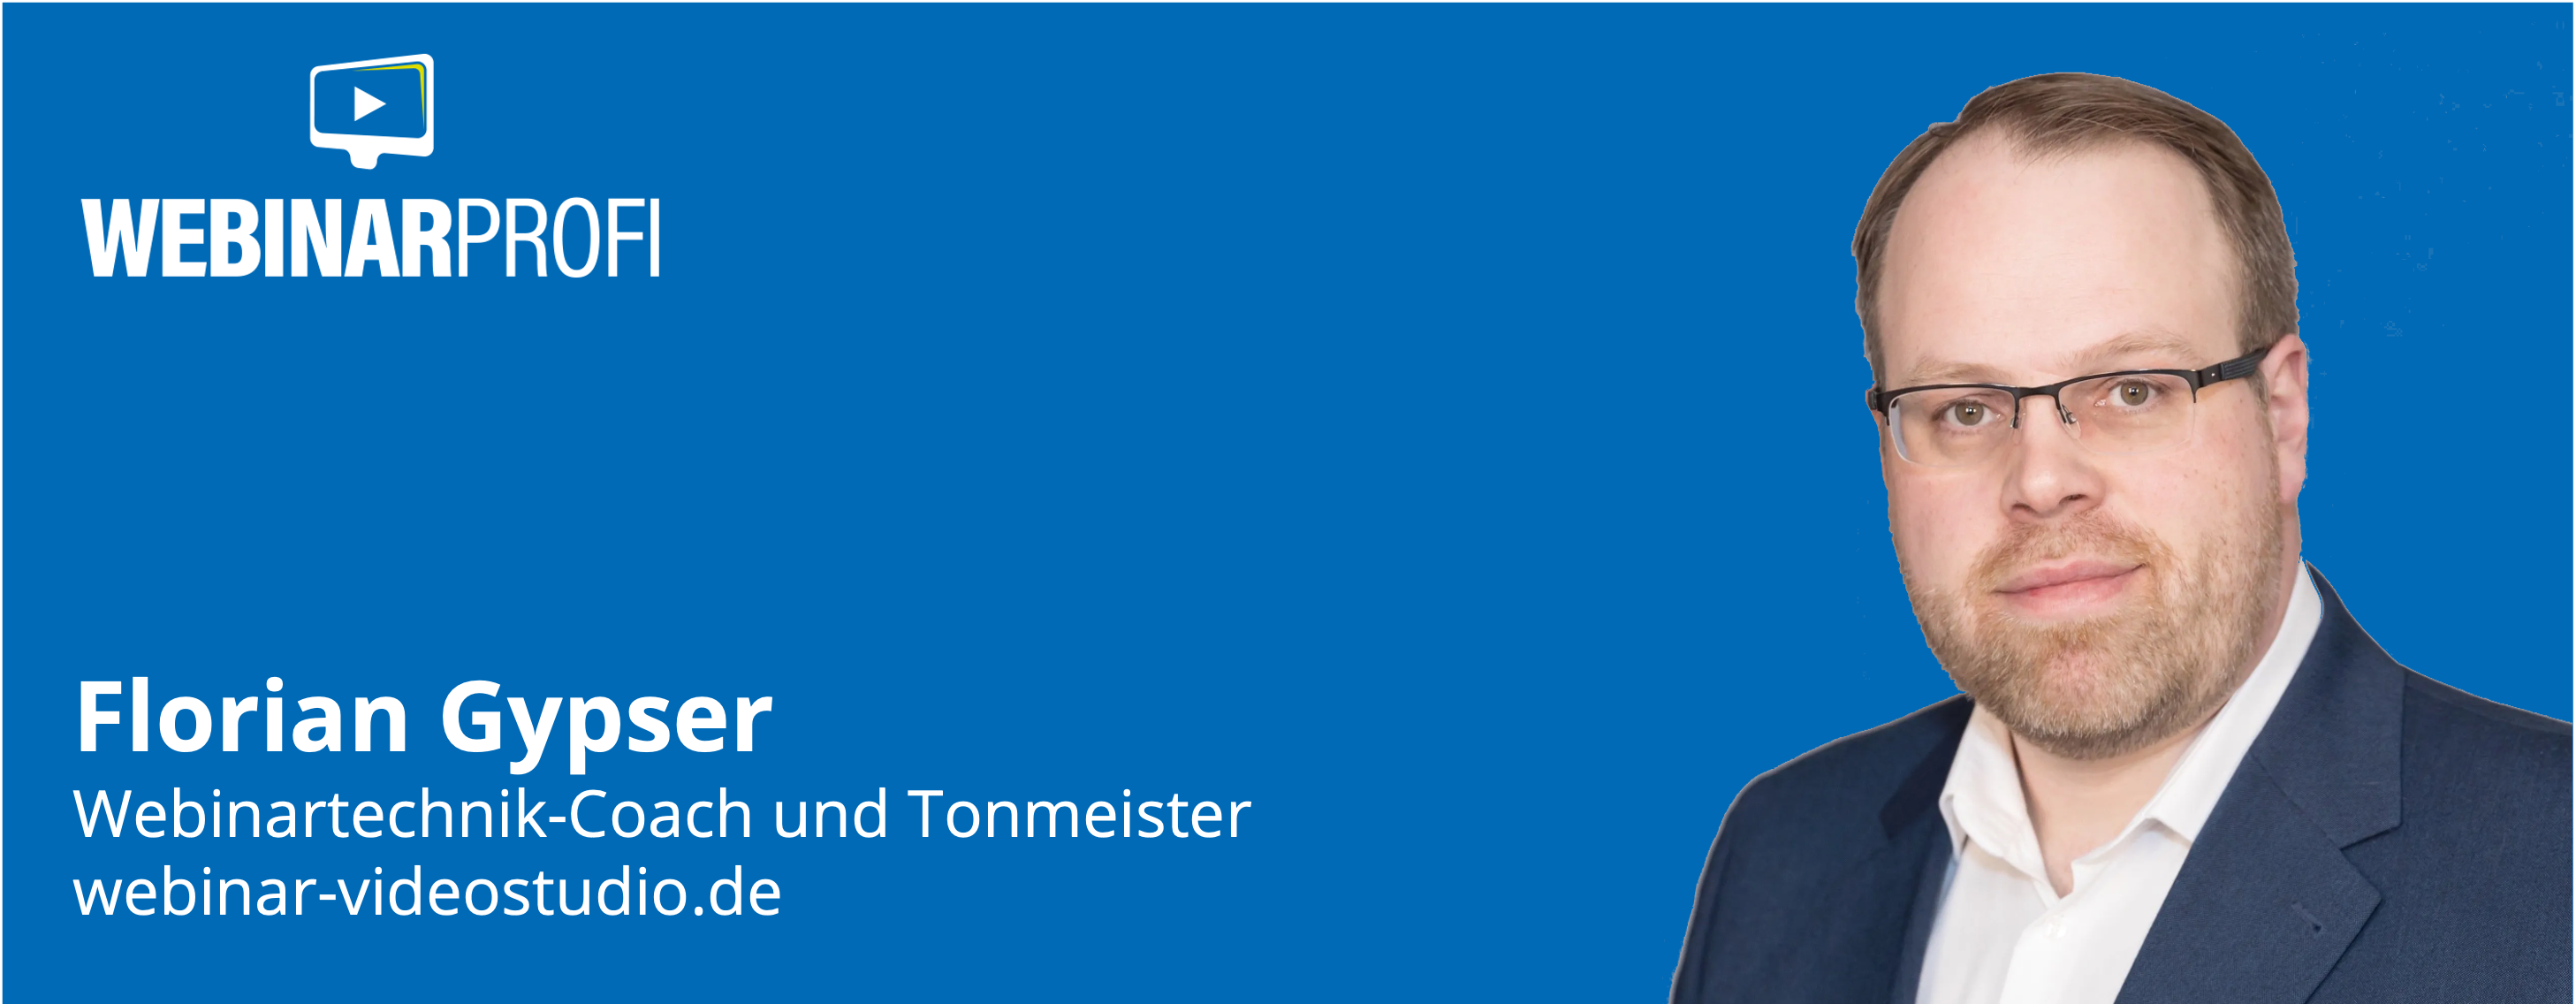 Florian Gypser - Webinartechnik-Coach und Tonmeister